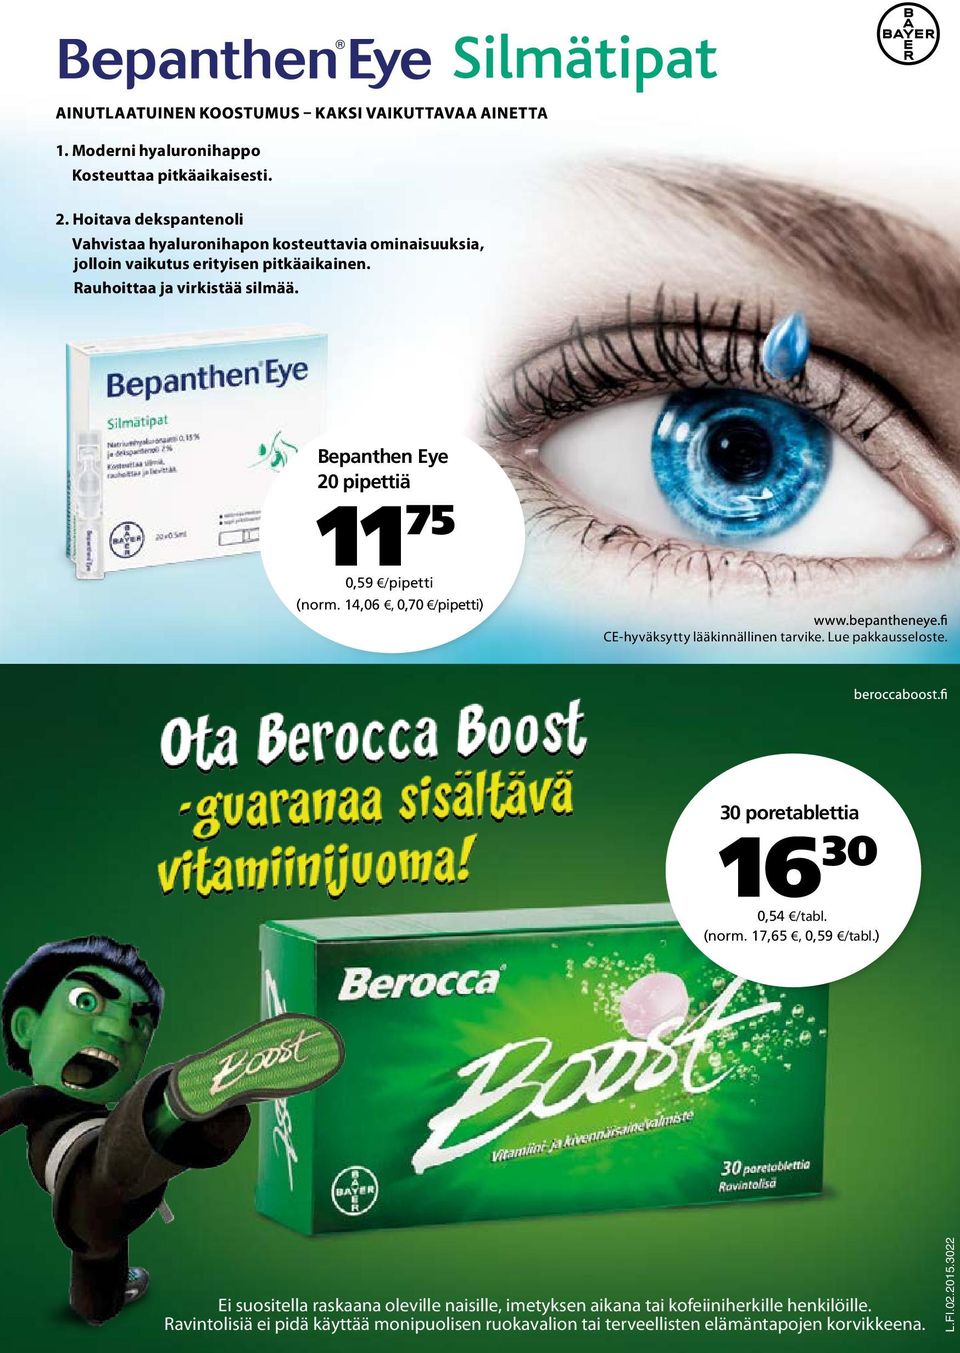 Bepanthen Eye 20 pipettiä 11 75 0,59 /pipetti (norm. 14,06, 0,70 /pipetti) CE-hyväksytty lääkinnällinen tarvike. Lue pakkausseloste.